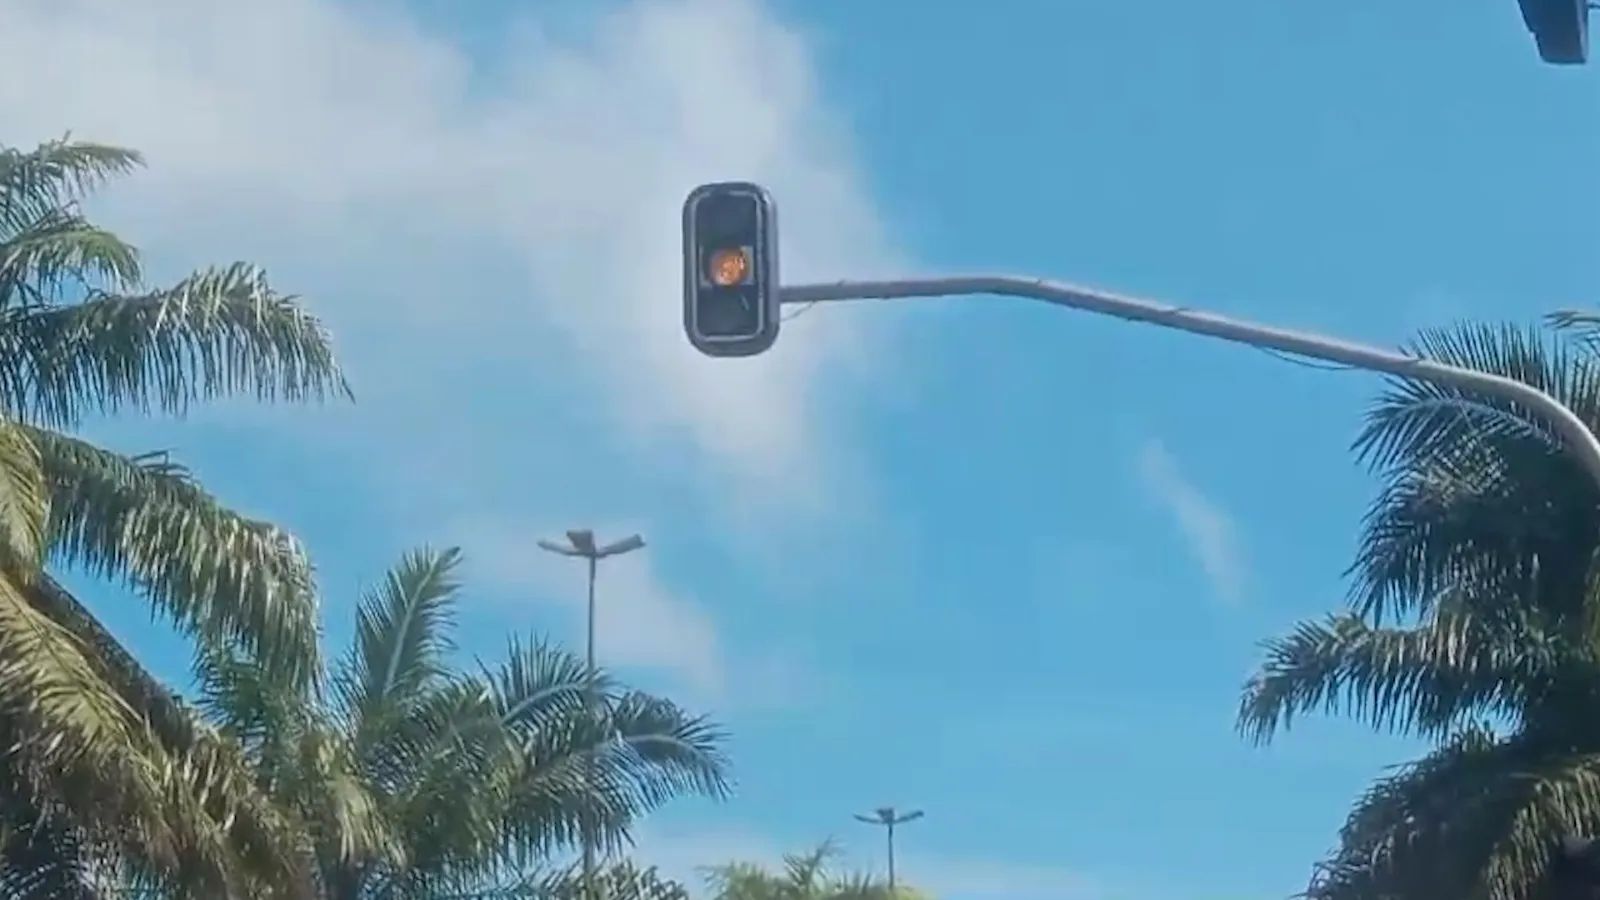 Semáforo da rodovia Transamazônica, próximo a Câmara de Vereadores, no Núcleo Cidade Nova